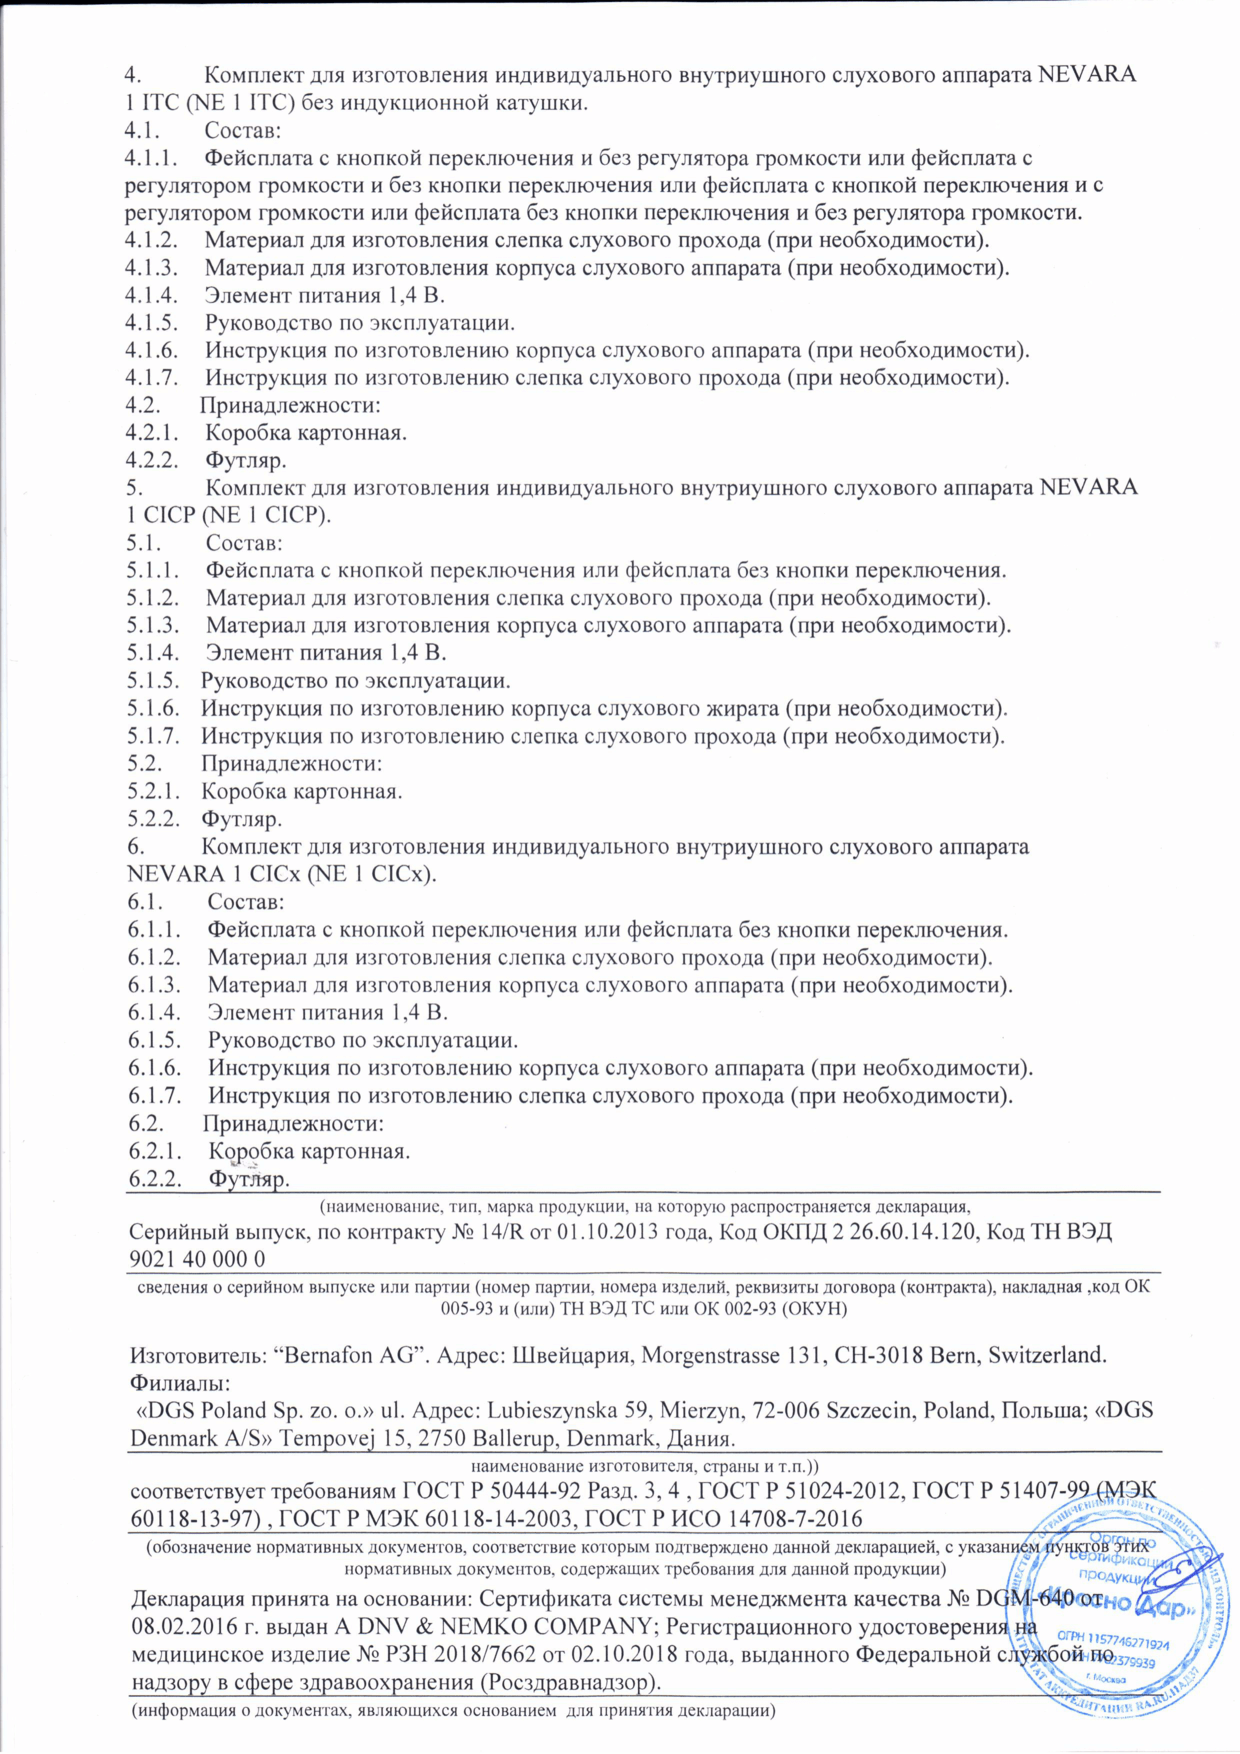 Декларация о соответствии - Комплект для изготовления индивидуального слухового аппарата NEVARA - 2 страница